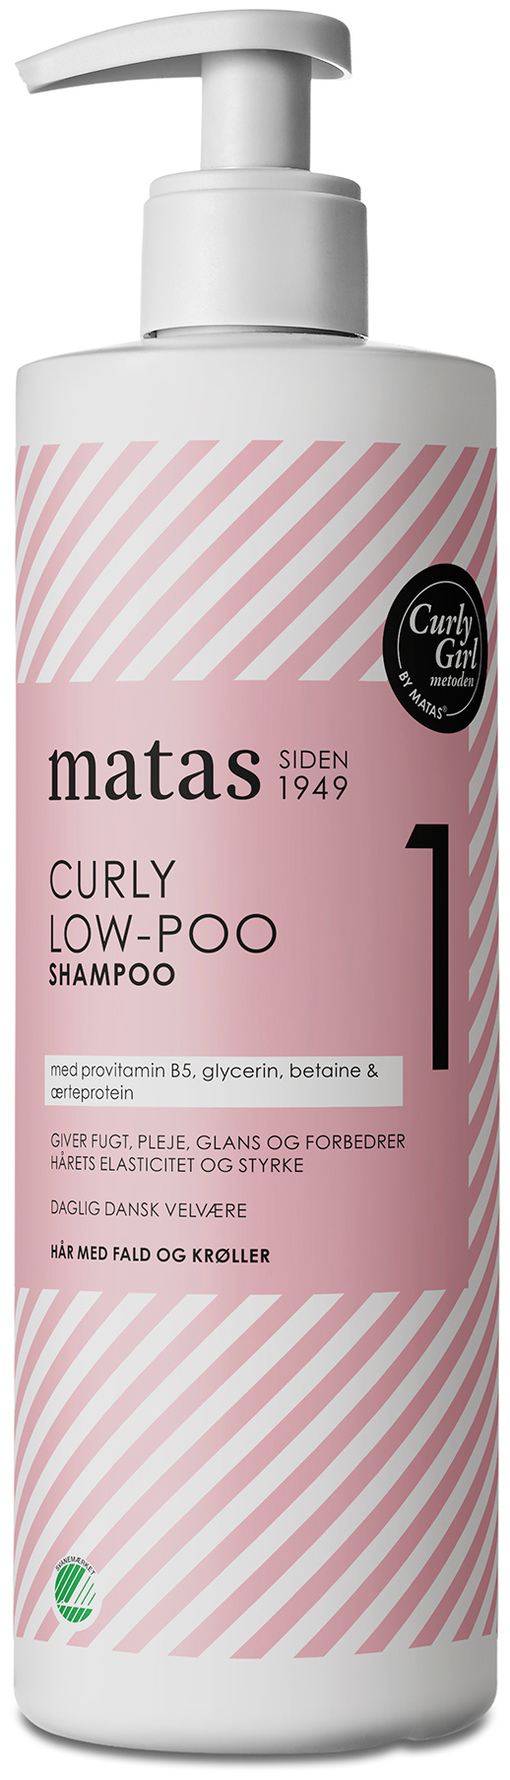 Køb Curly Shampoo -